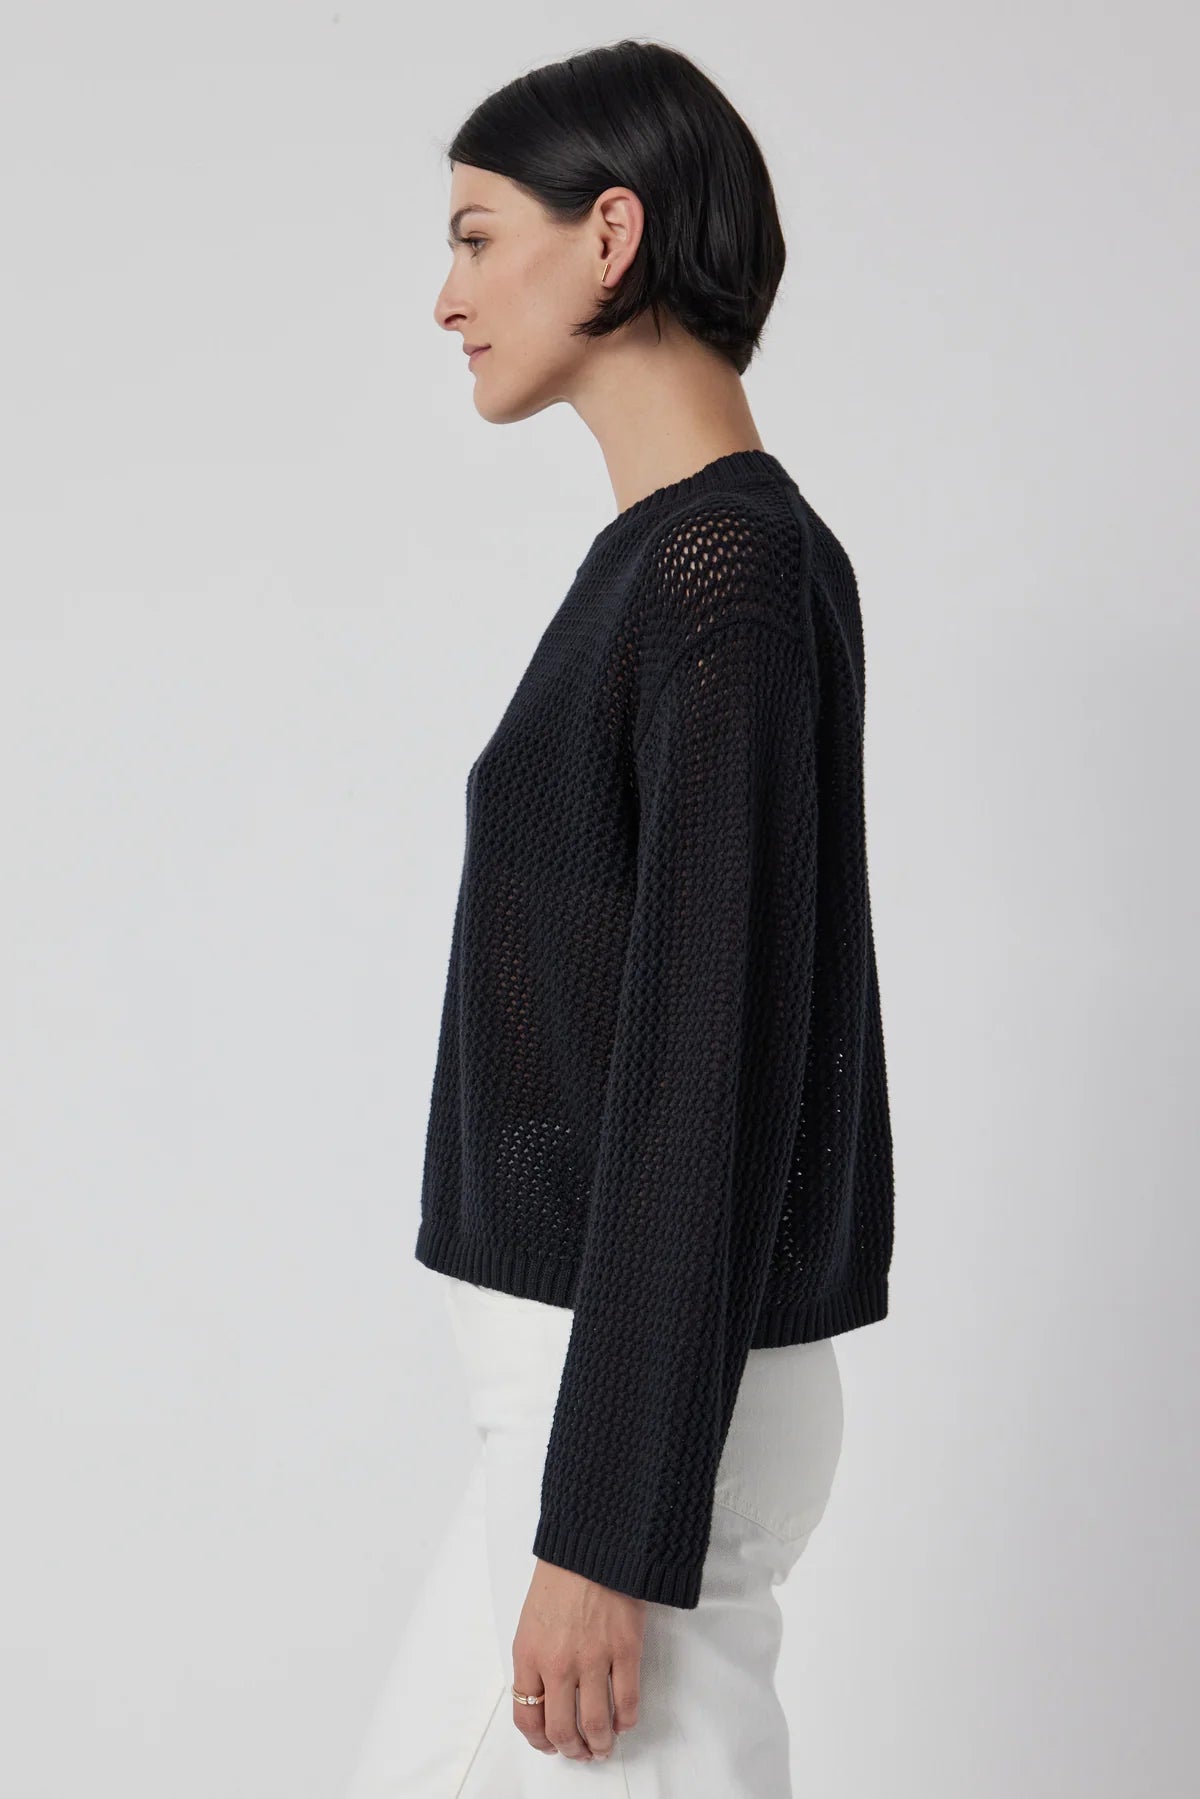 Velvet Kanan Long Sleeve Sweater